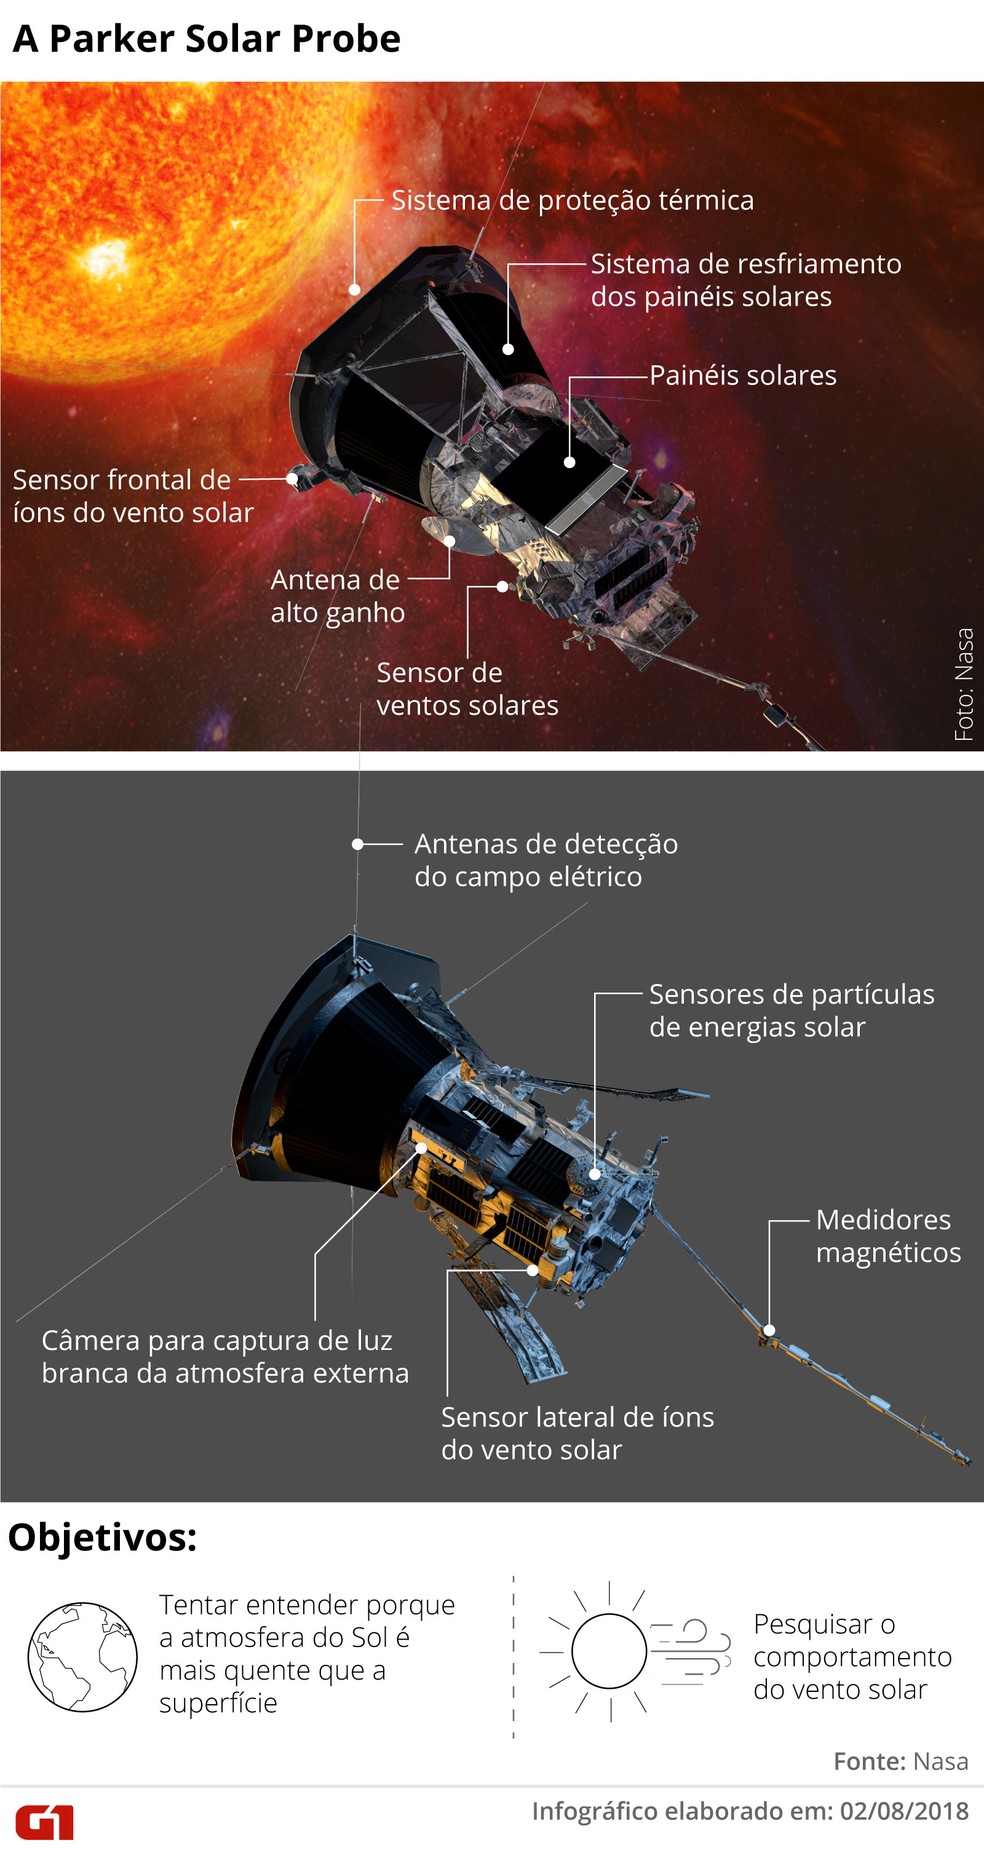 Parker Solar Probe, missão da Nasa para o Sol — Foto: Claudia Ferreira/G1